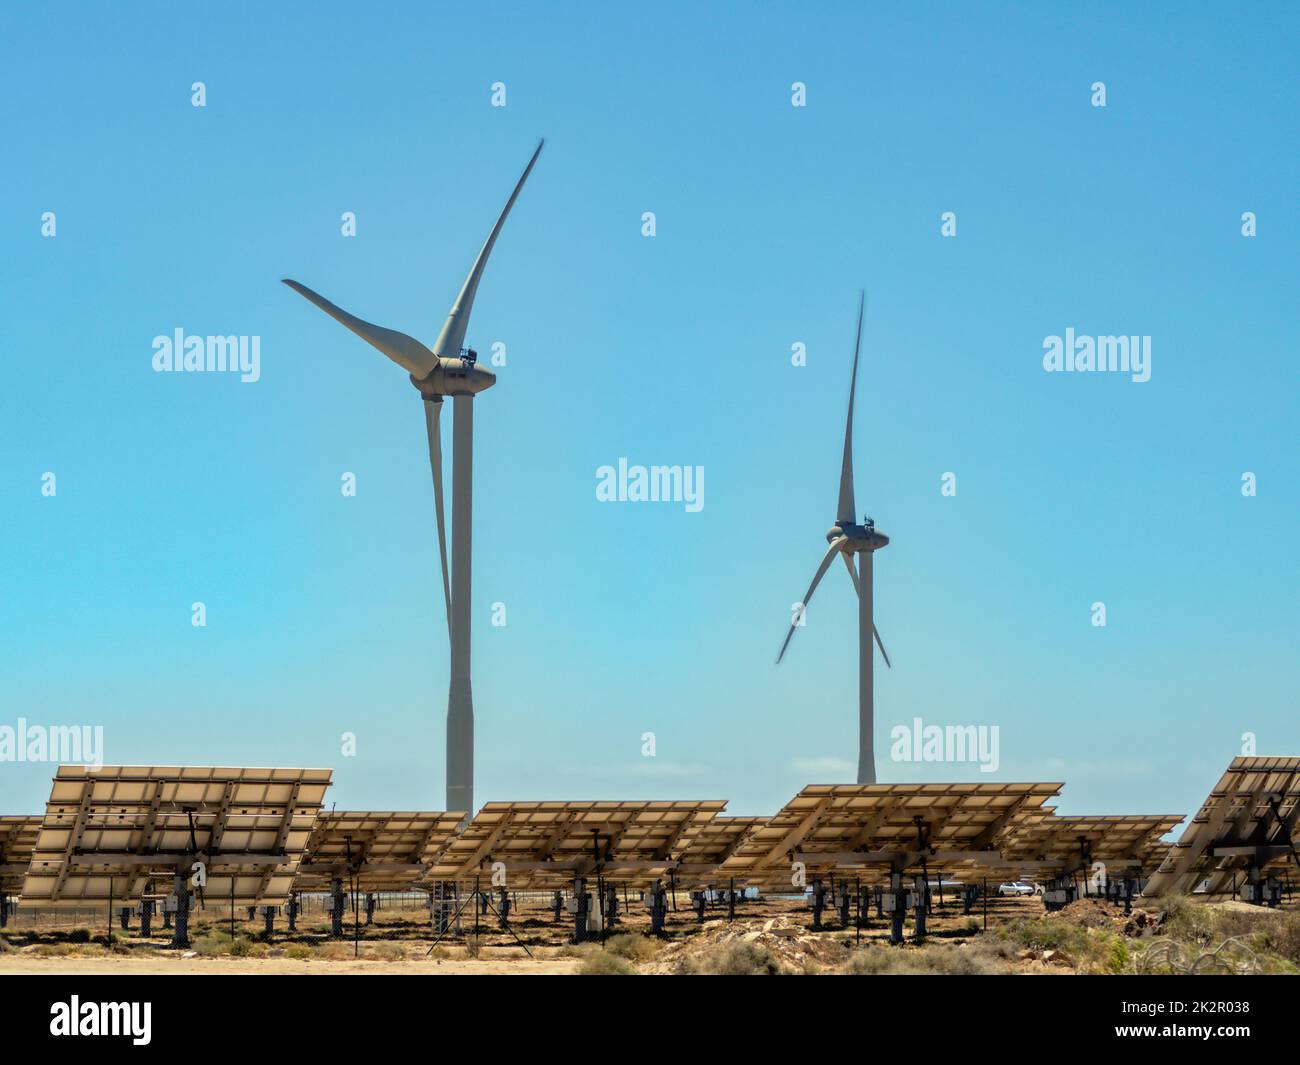 Energia ecologica da turbine solari ed eoliche, qui due turbine eoliche e diversi campi solari Foto Stock